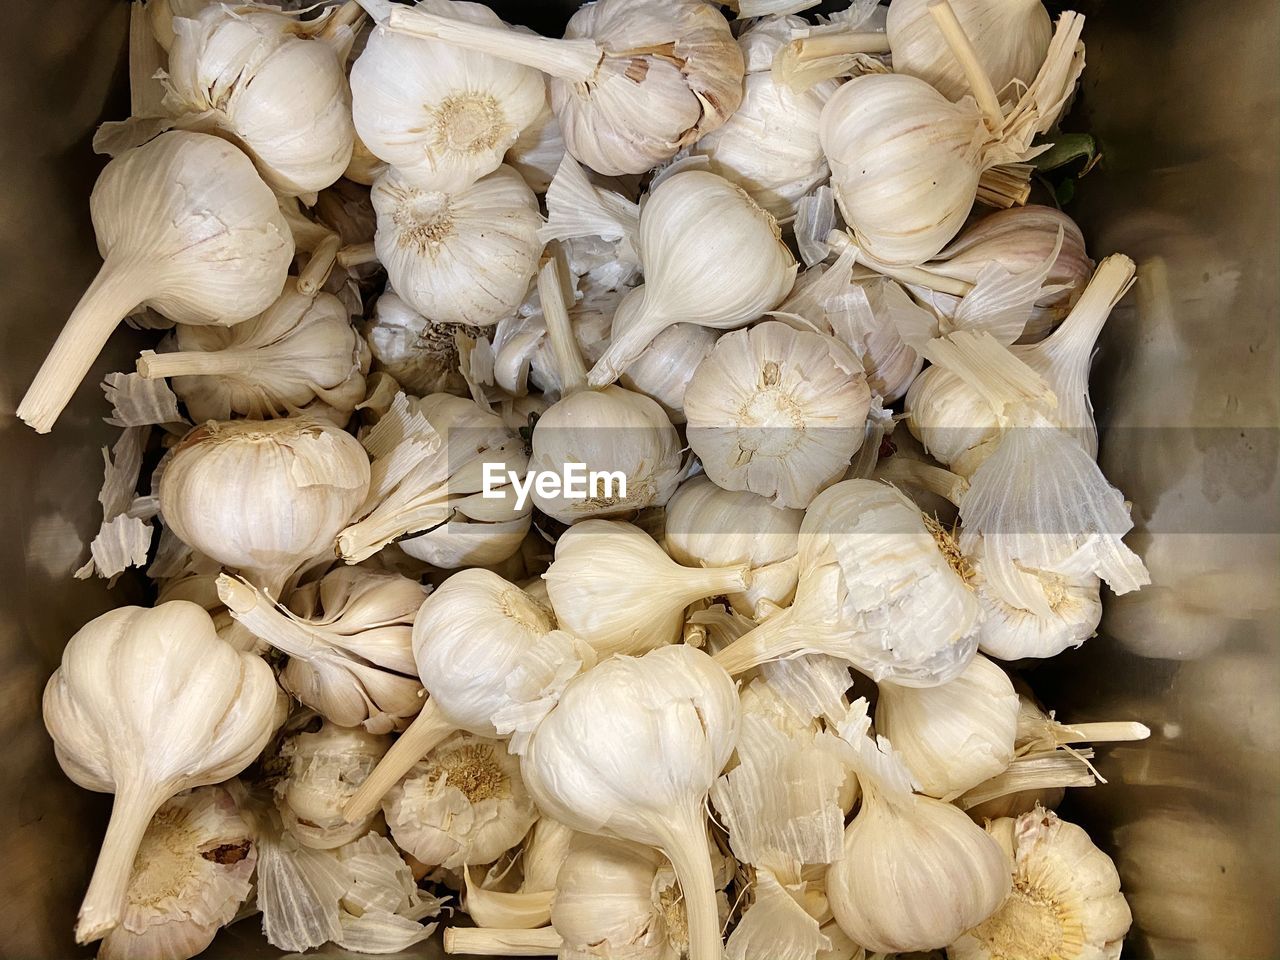 Full frame of garlic bulbs.